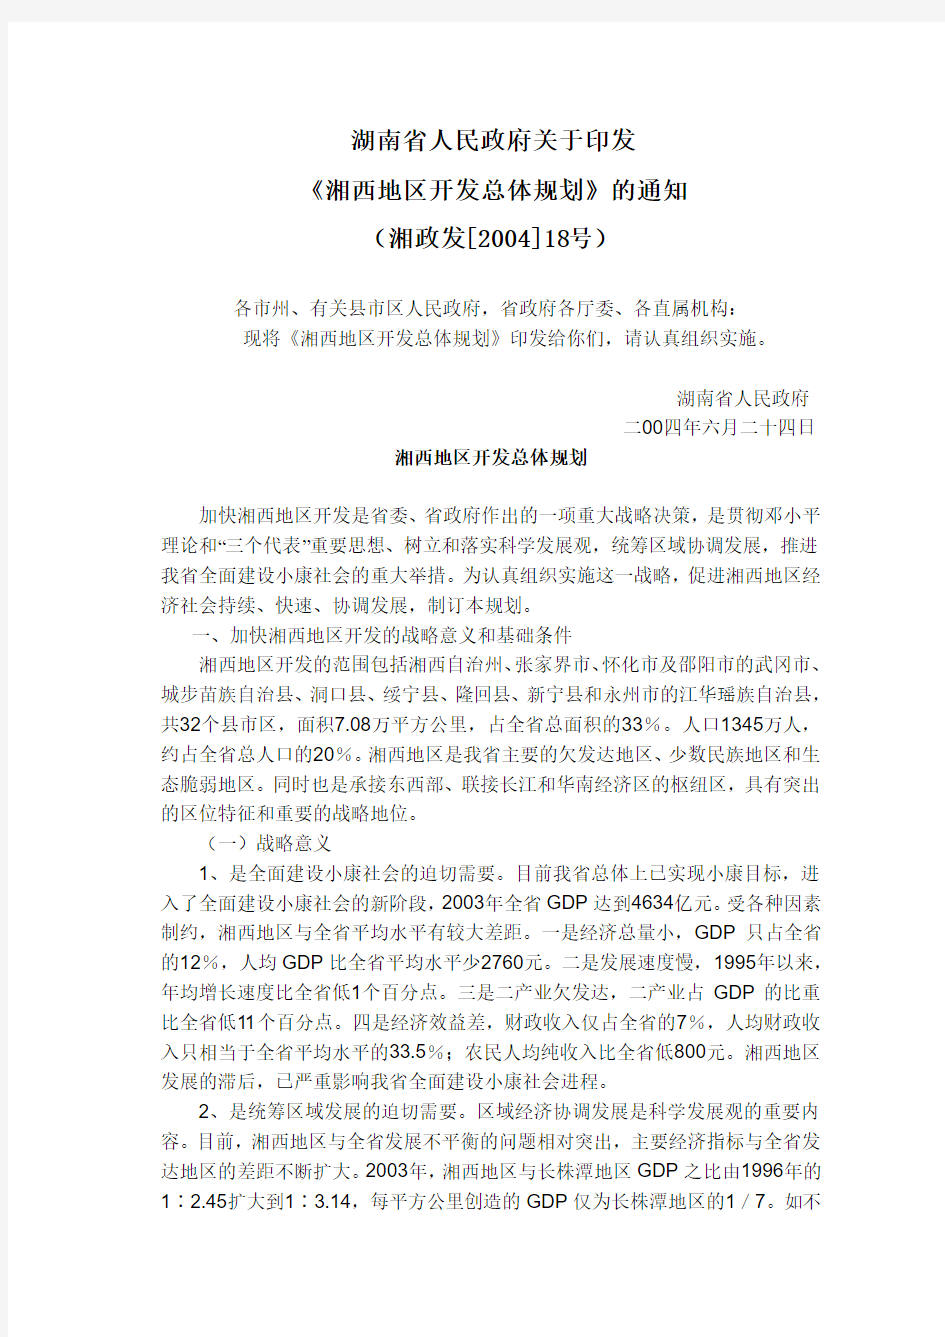 湖南省人民政府关于印发《湘西地区开发总体规划》的通知(湘政发[2004]18号)